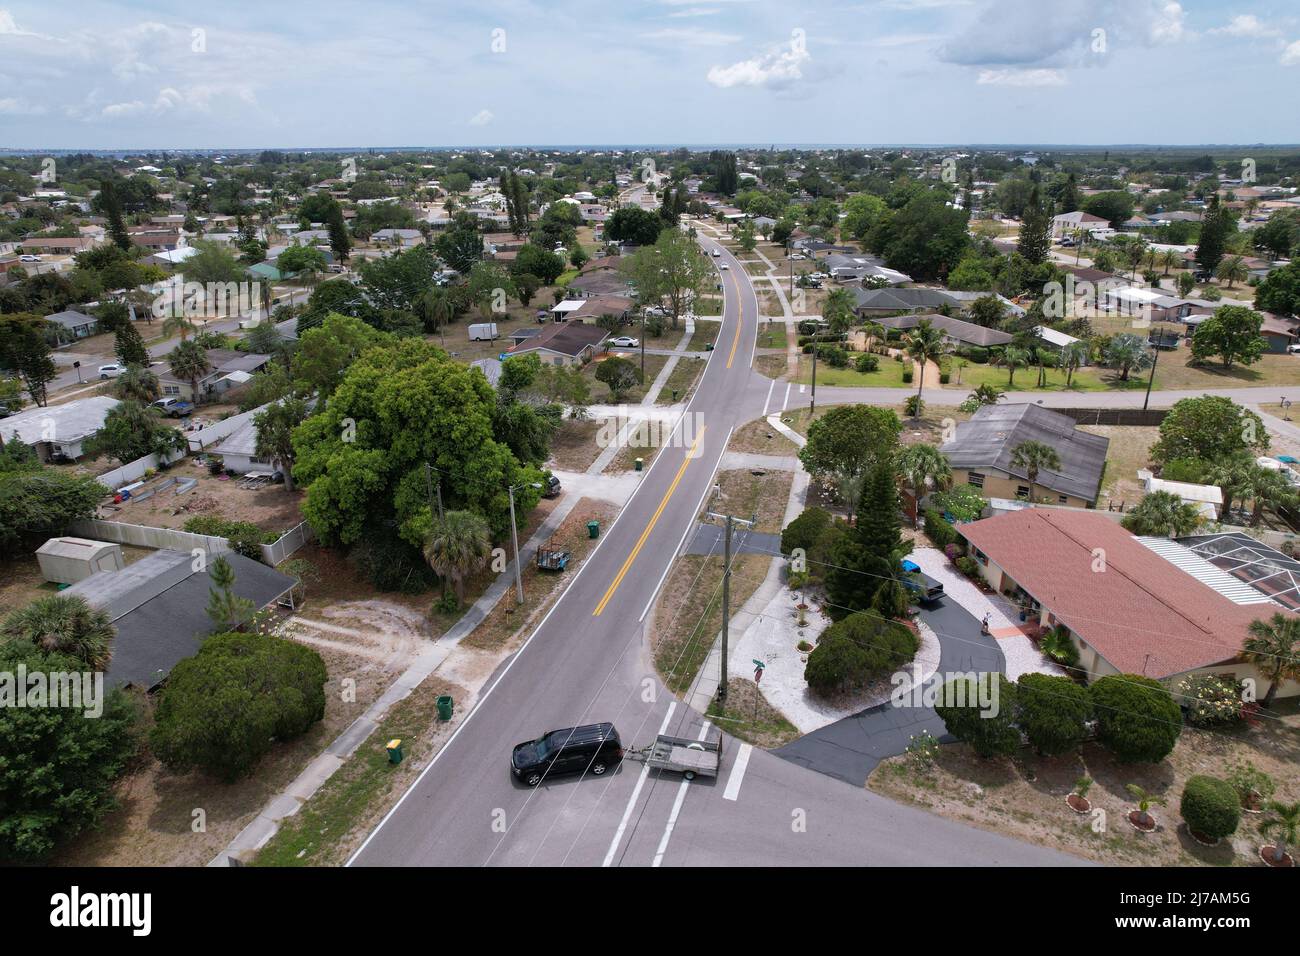 Vue aérienne du quartier Am Older dans le port de charlotte en Floride Banque D'Images